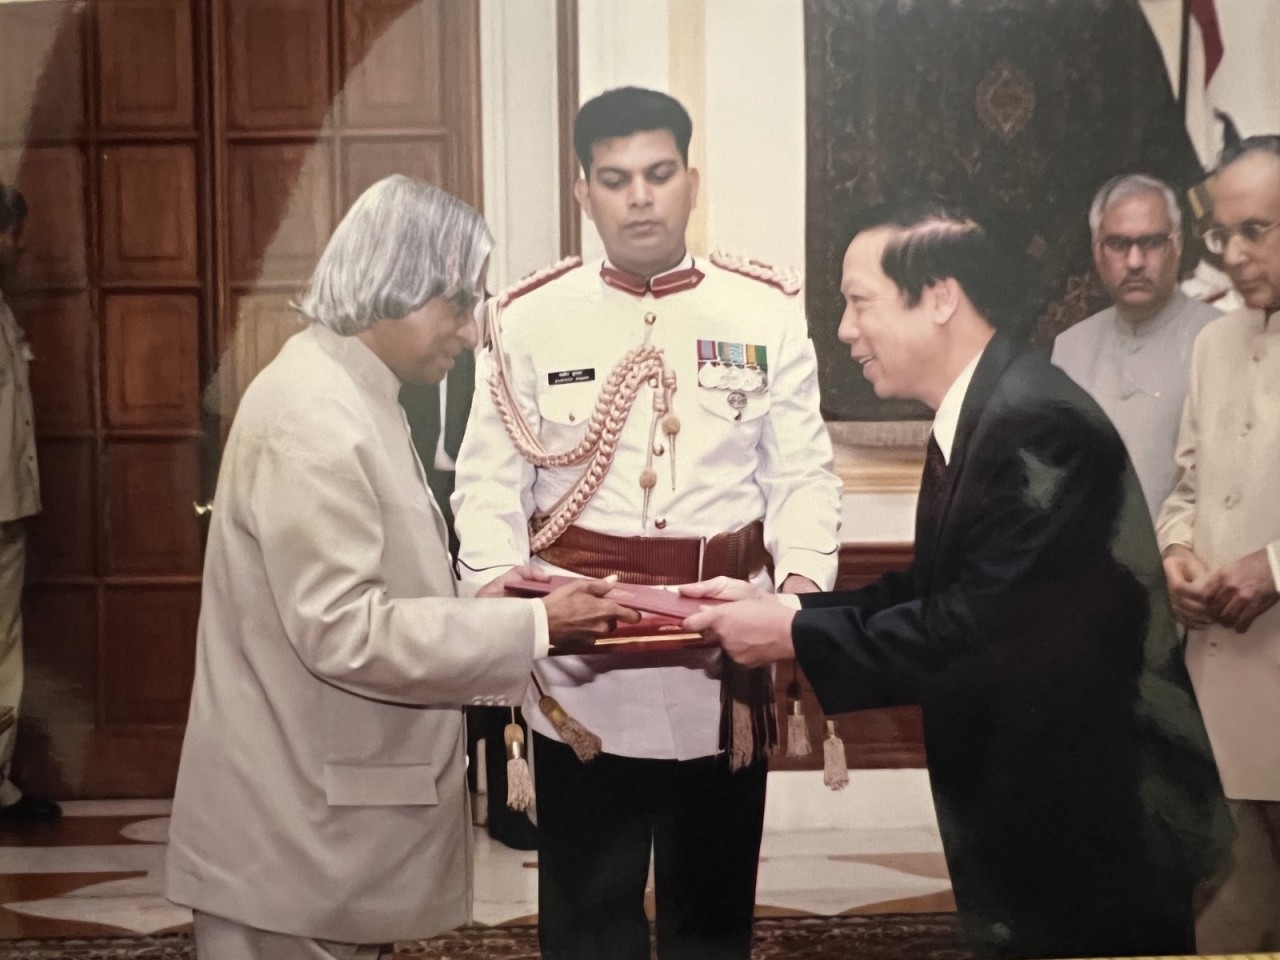 Đại sứ Vũ Quang Diệm trình quốc thư lên Tổng thống Ấn Độ A. P. J. Abdul Kalam năm 2006.